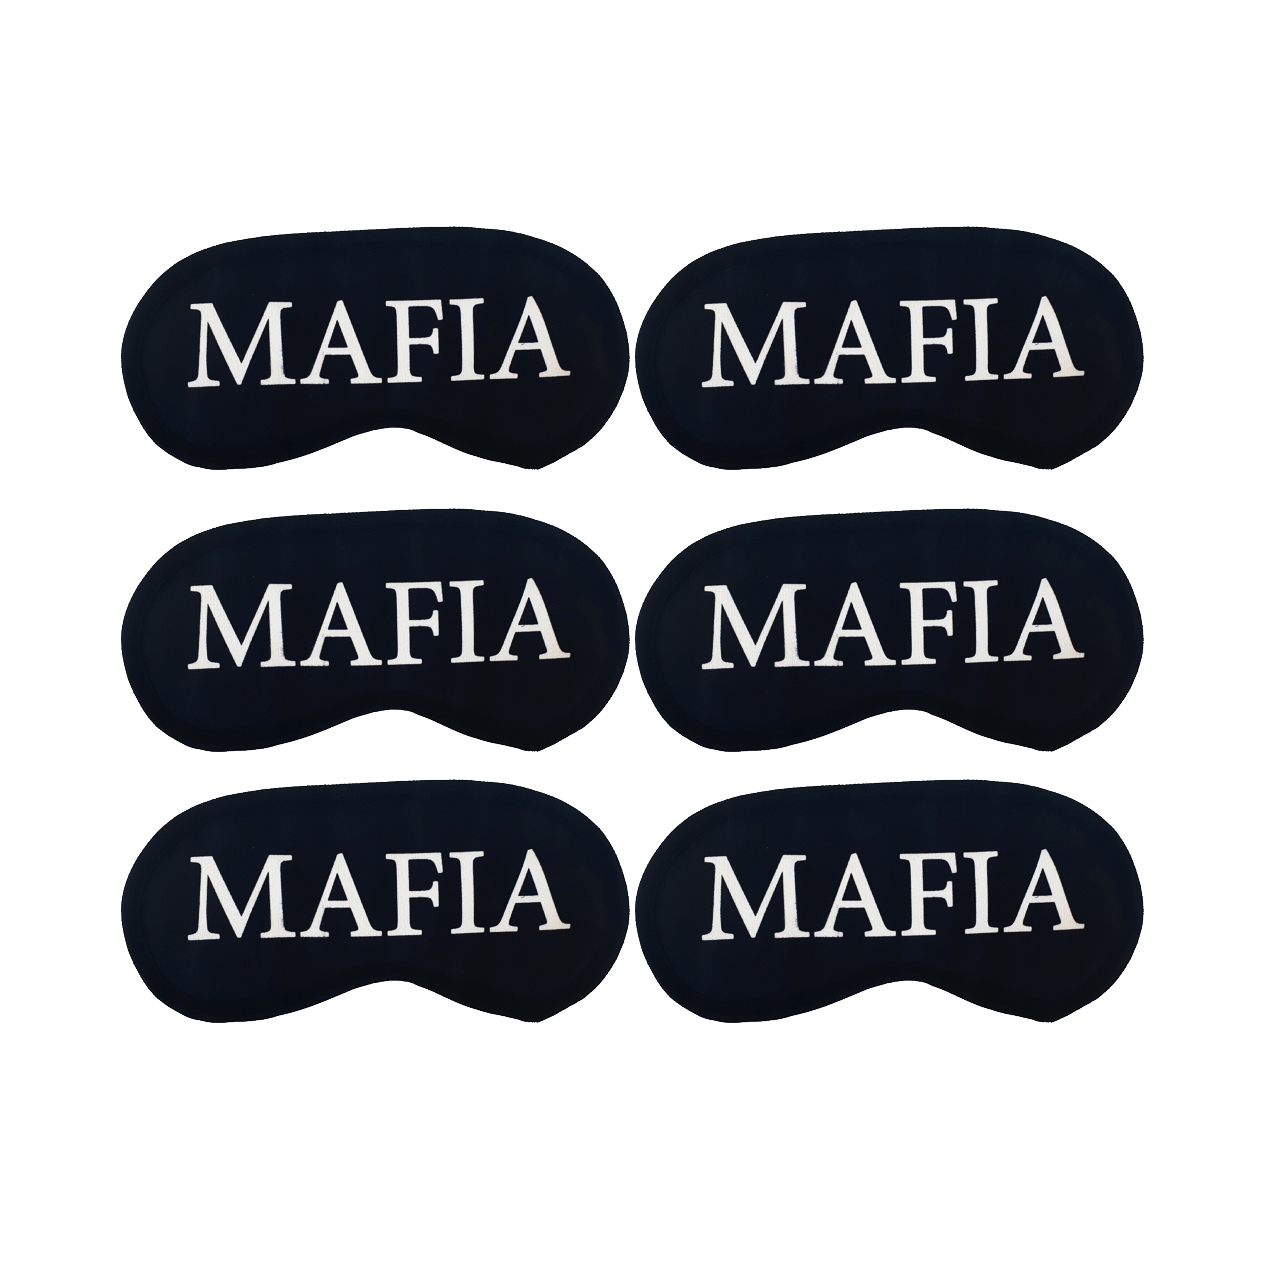 نقاب بازی مافیا مدل MAFIA بسته 6 عددی